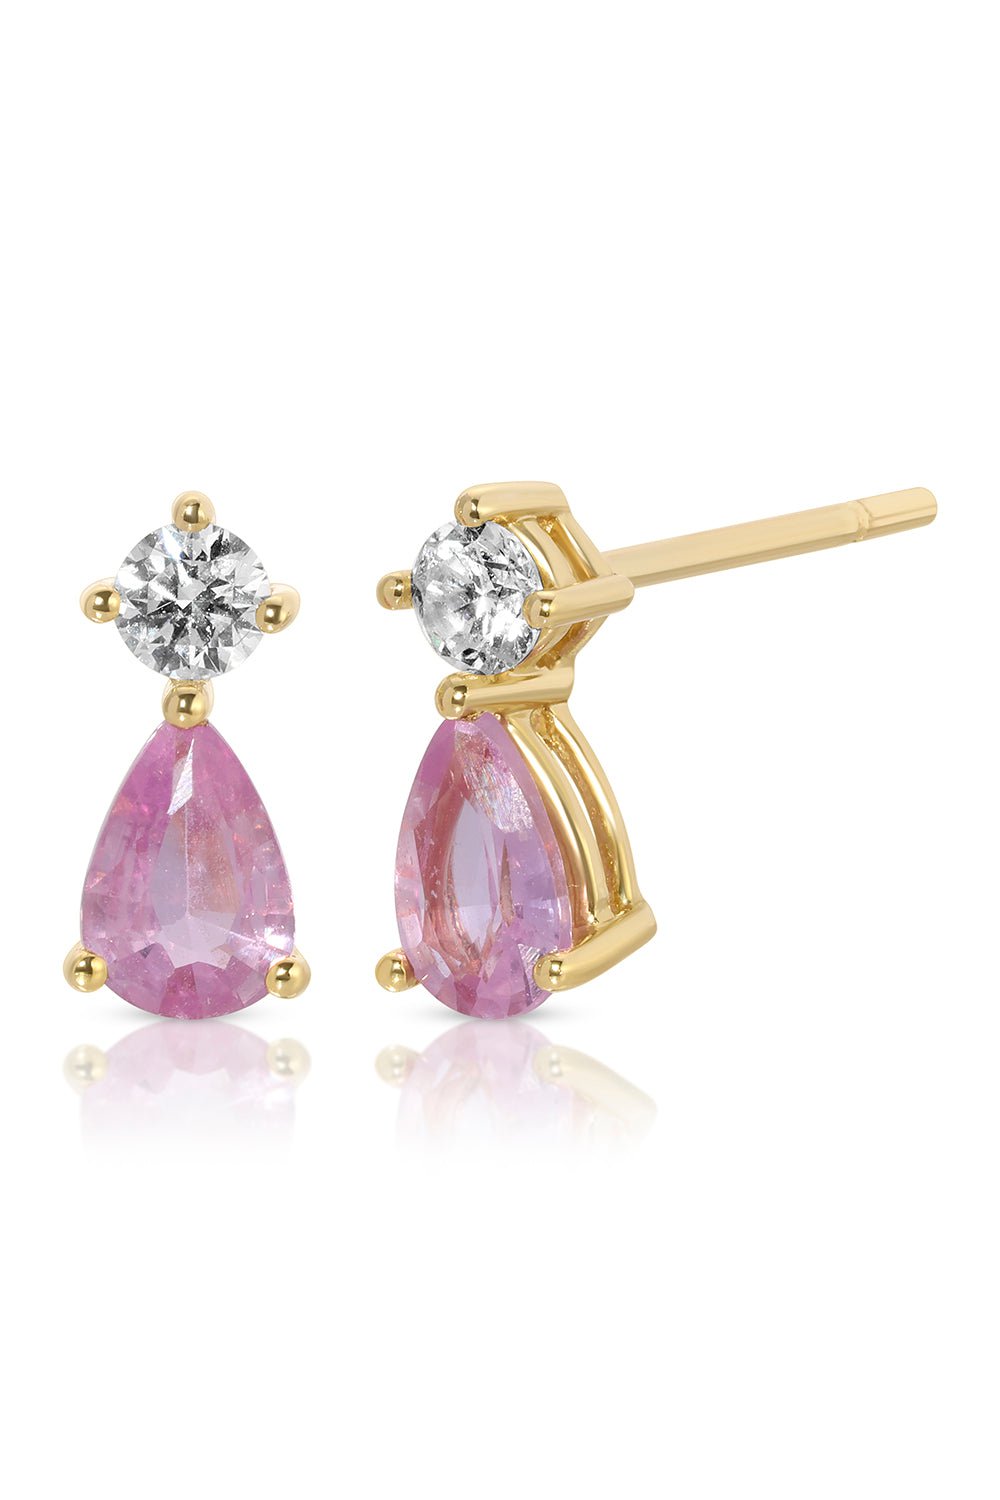 ANITA KO-Pink Sapphire Violet Stud Earrings-YLWGLD